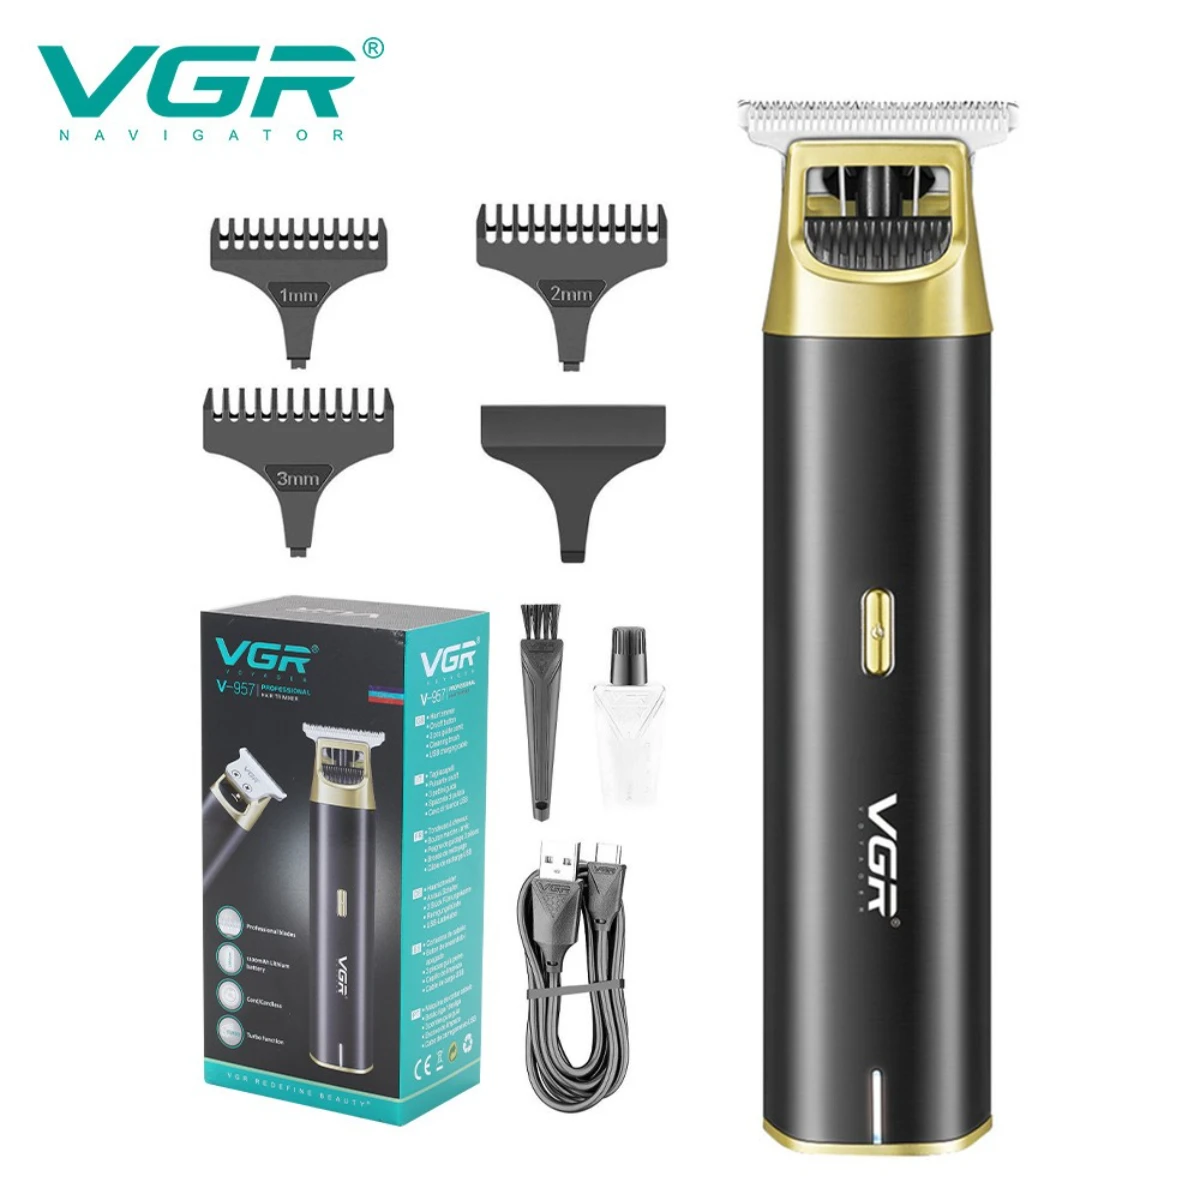 

VGR машинка для стрижки волос машинка для стрижки волос Т9 машина для стрижки волос беспроводной Парикмахерская Профессиональный Триммер для волос Аккумуляторная Стрижка волос Машинка для стрижки для мужчин V-957